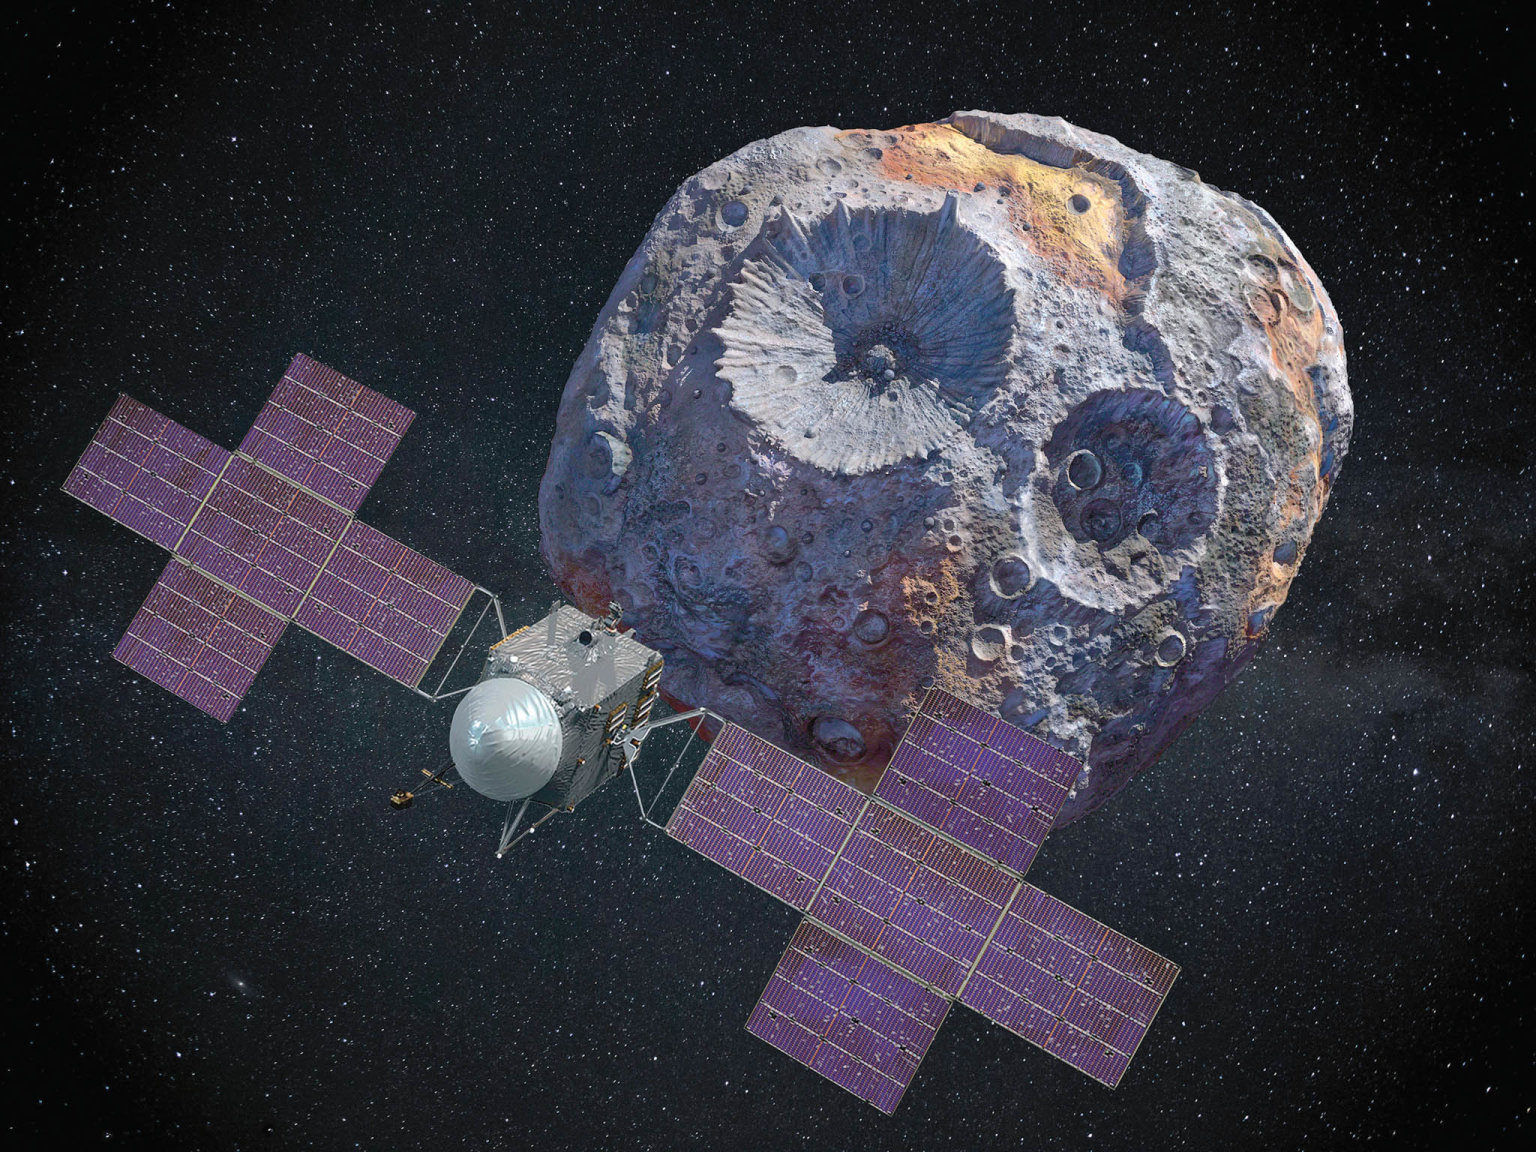 Asteroid o prùmìru 1,6 kilometru mùže obsahovat dvì miliardy tun rud. Problémem zùstává doprava získaných kovù na Zemi.